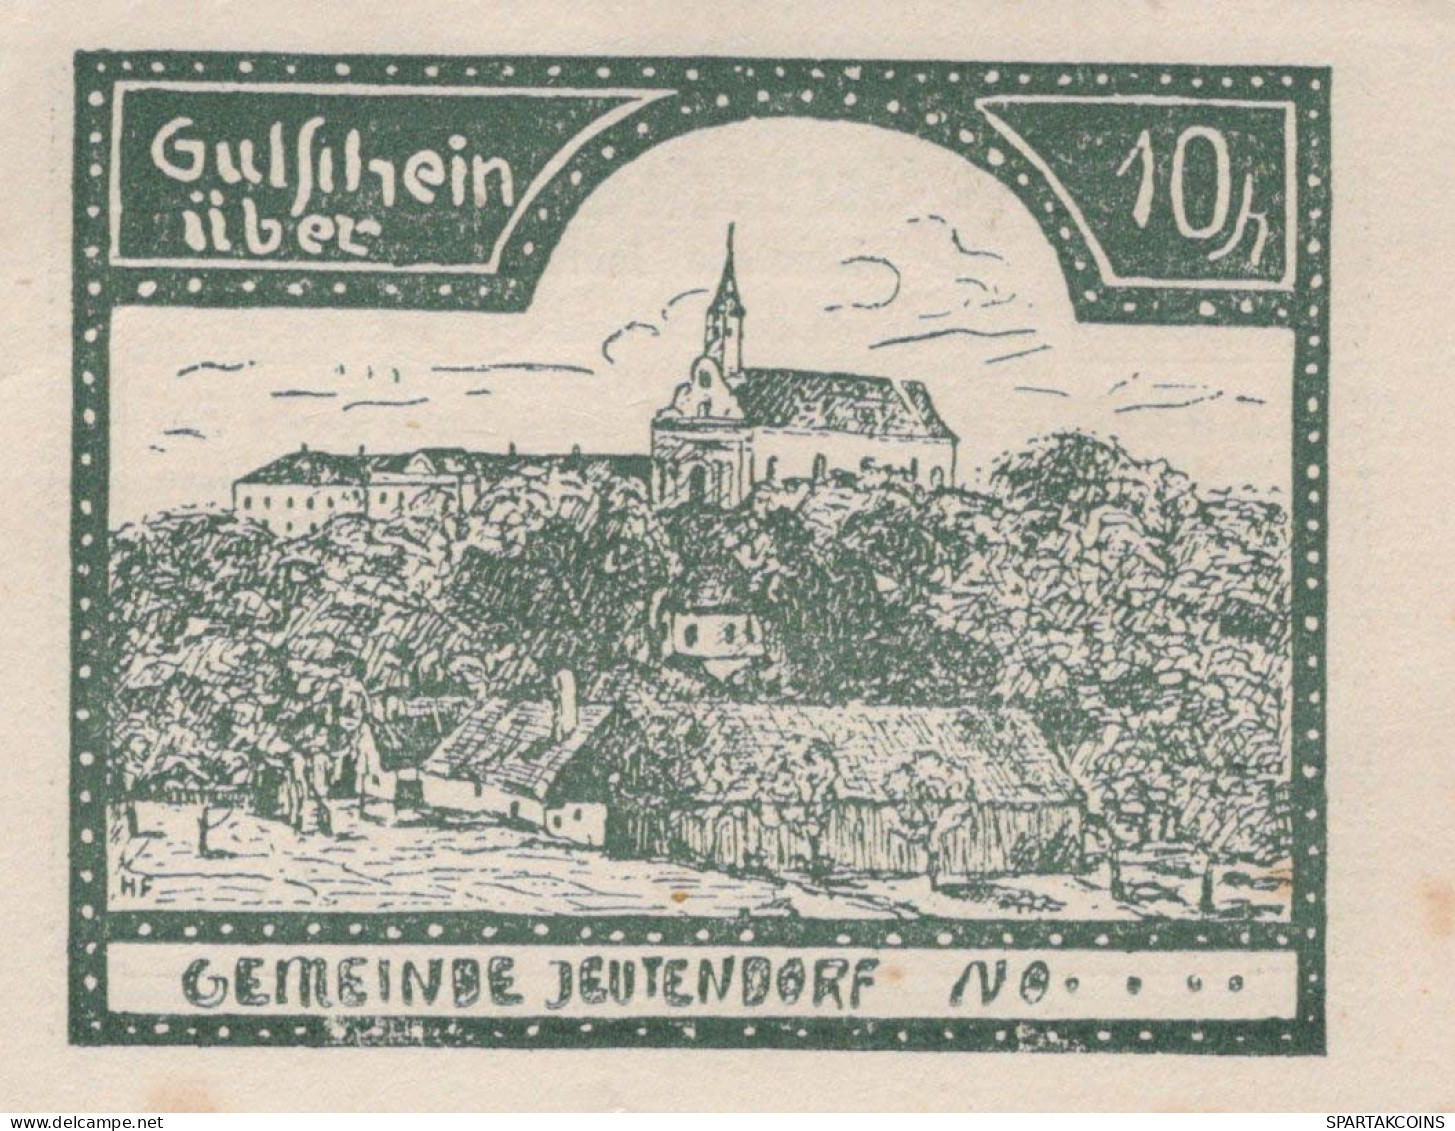 10 HELLER 1920 Stadt JEUTENDORF Niedrigeren Österreich Notgeld #PD634 - [11] Emisiones Locales